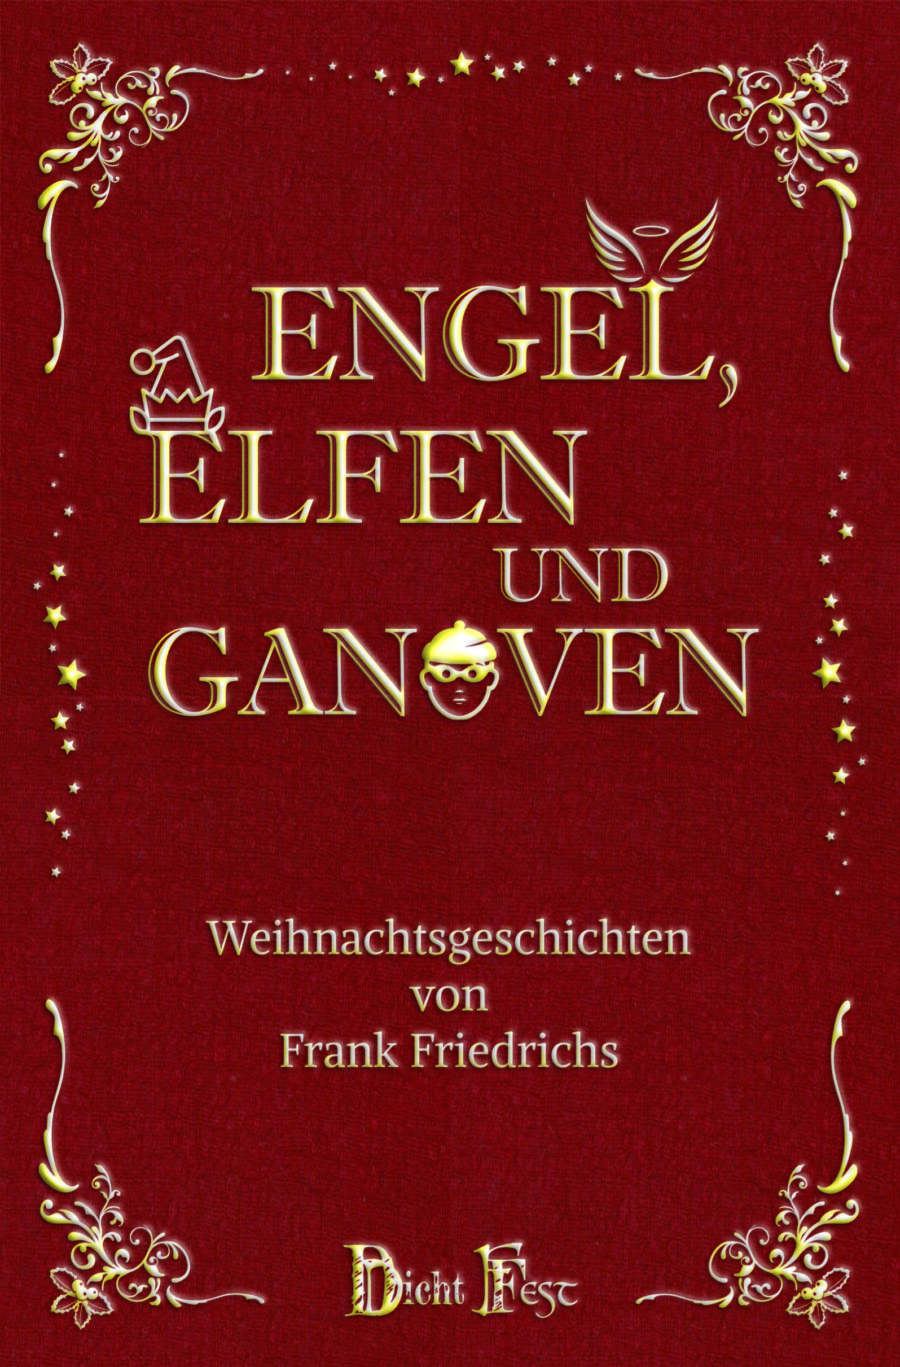 Frank Friedrichs: “Engel, Elfen und Ganoven”